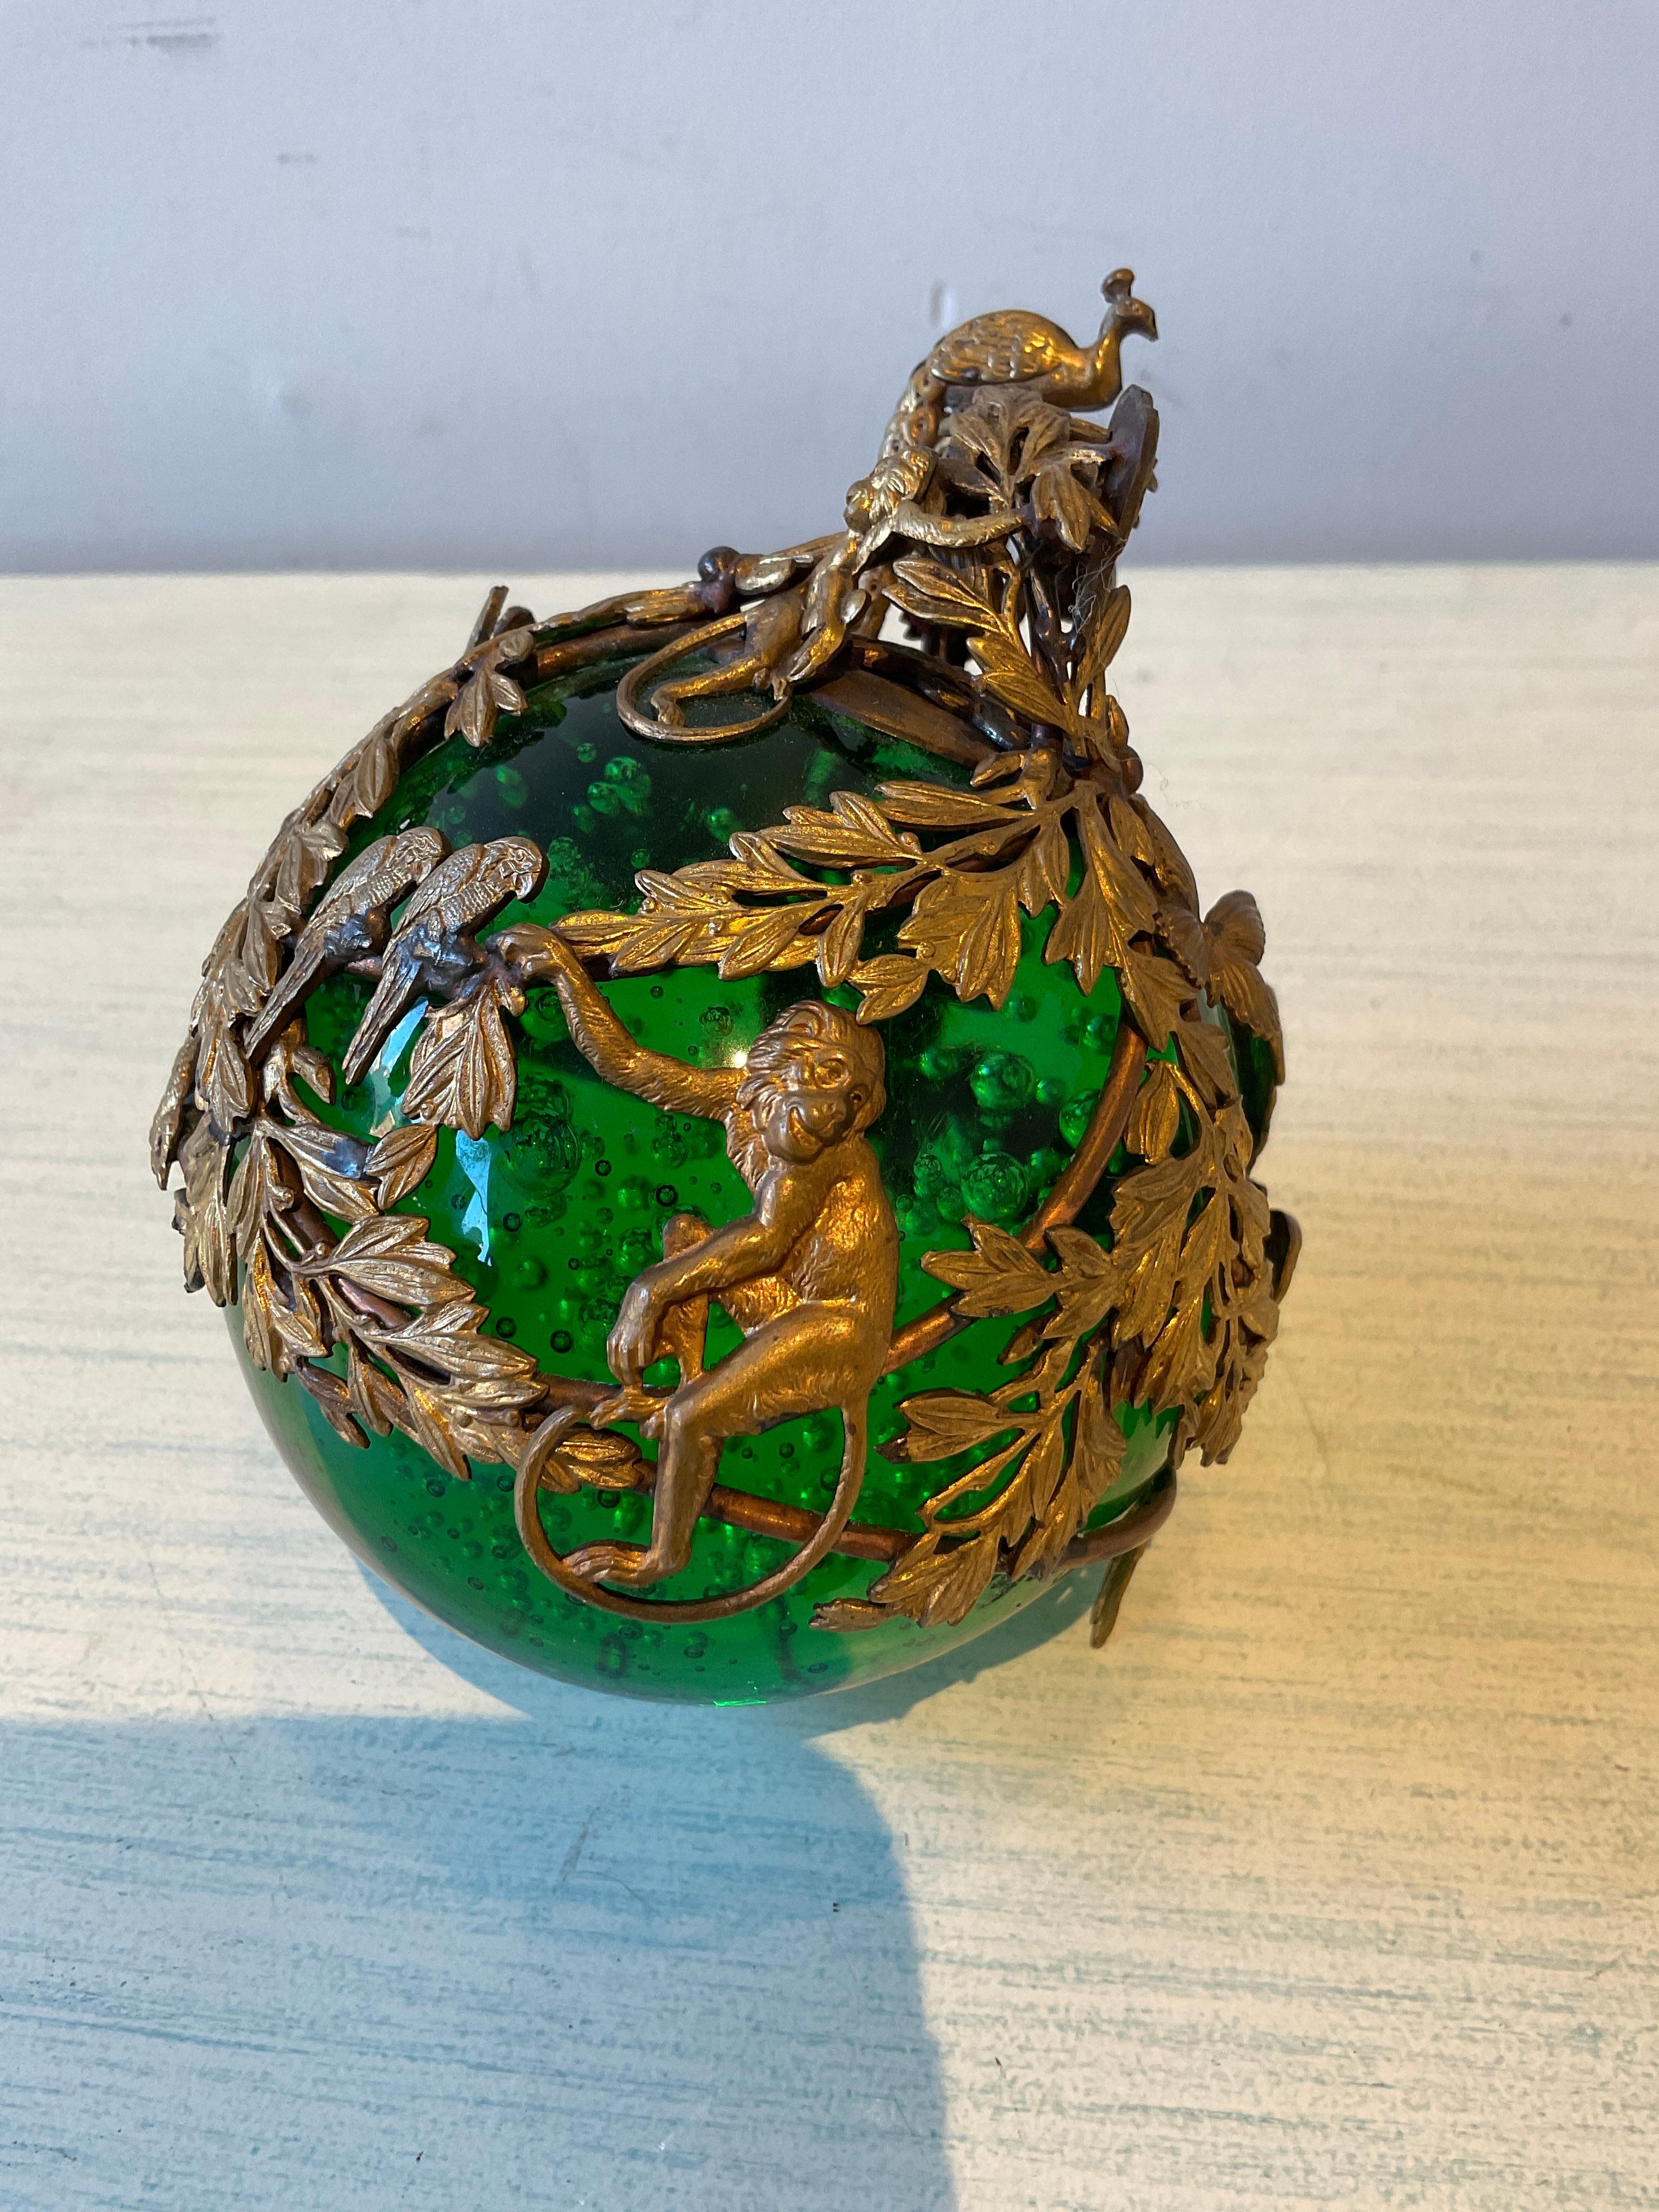 Französisches Ornament aus grünem Blasenglas von 1910 mit Ormolu aus Messing mit einem Affen, einem Papagei, einer Schlange, einem Pfau und einem Schmetterling. Würde sich gut auf einem Sockel machen.
Signiert, aber die Unterschrift ist nicht zu